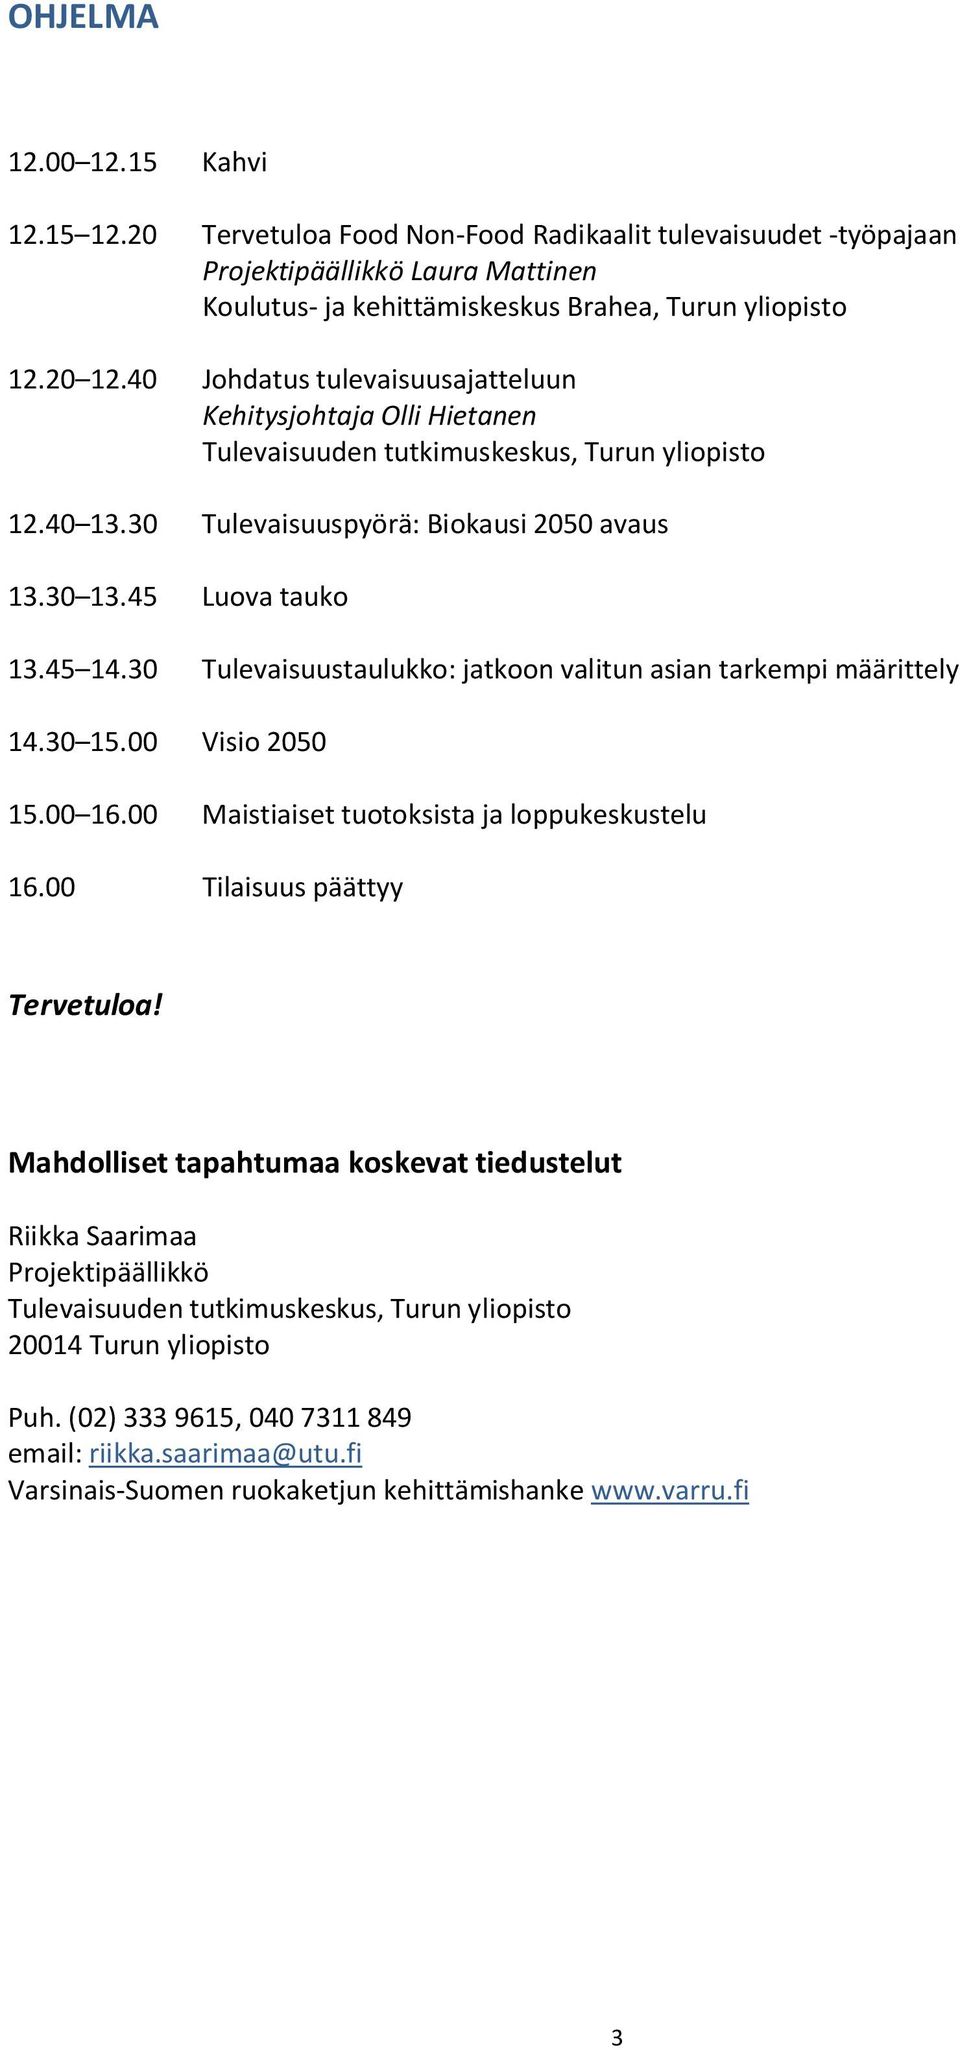 40 Johdatus tulevaisuusajatteluun Kehitysjohtaja Olli Hietanen 12.40 13.30 Tulevaisuuspyörä: Biokausi 2050 avaus 13.30 13.45 Luova tauko 13.45 14.